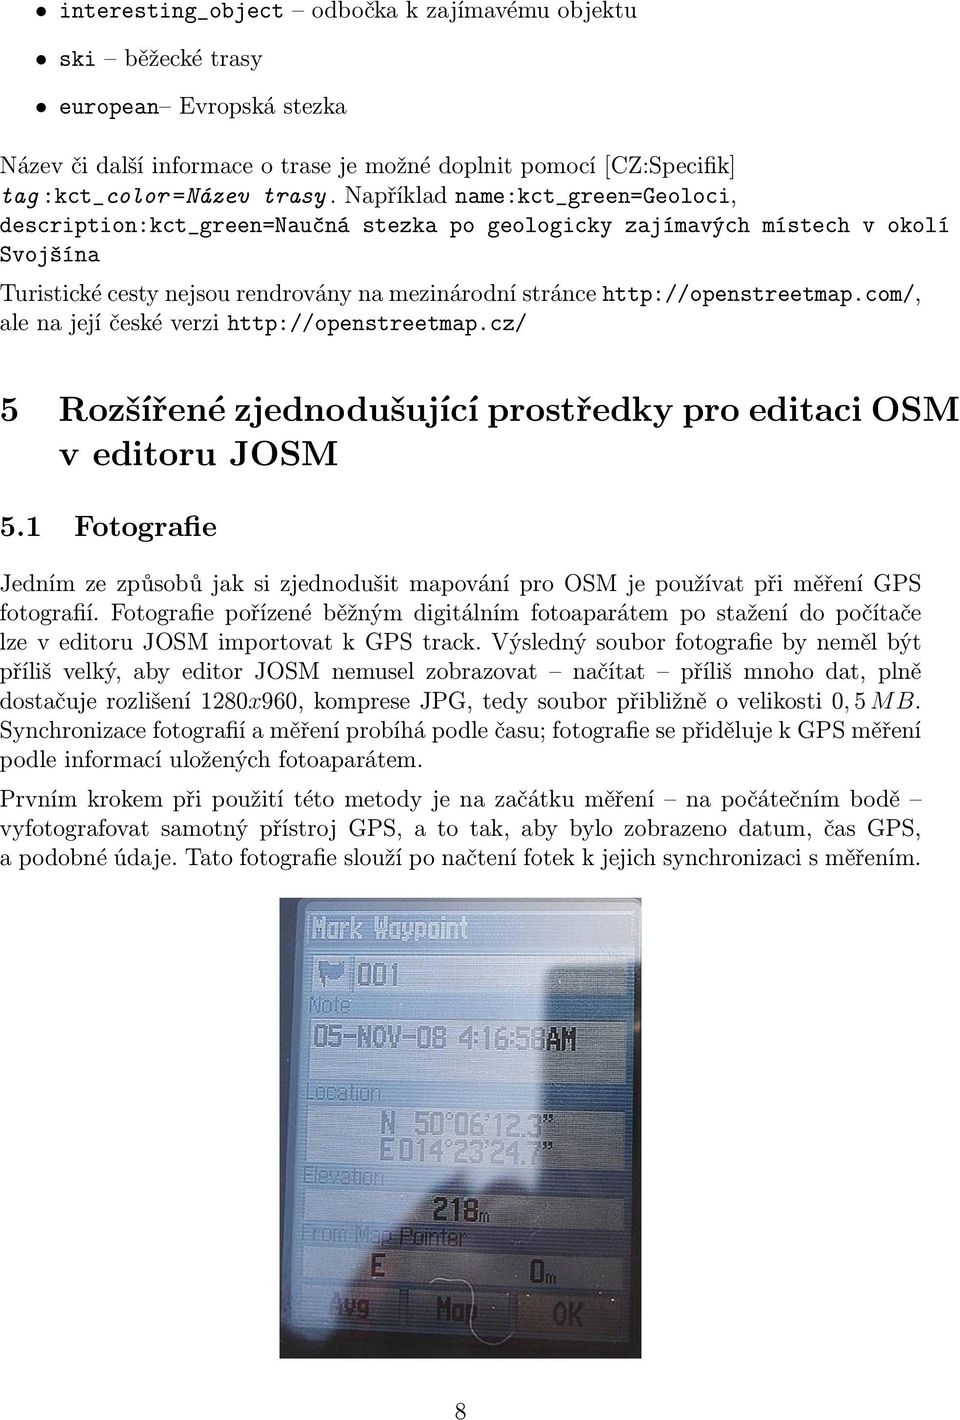 com/, ale na její české verzi http://openstreetmap.cz/ 5 Rozšířené zjednodušující prostředky pro editaci OSM v editoru JOSM 5.